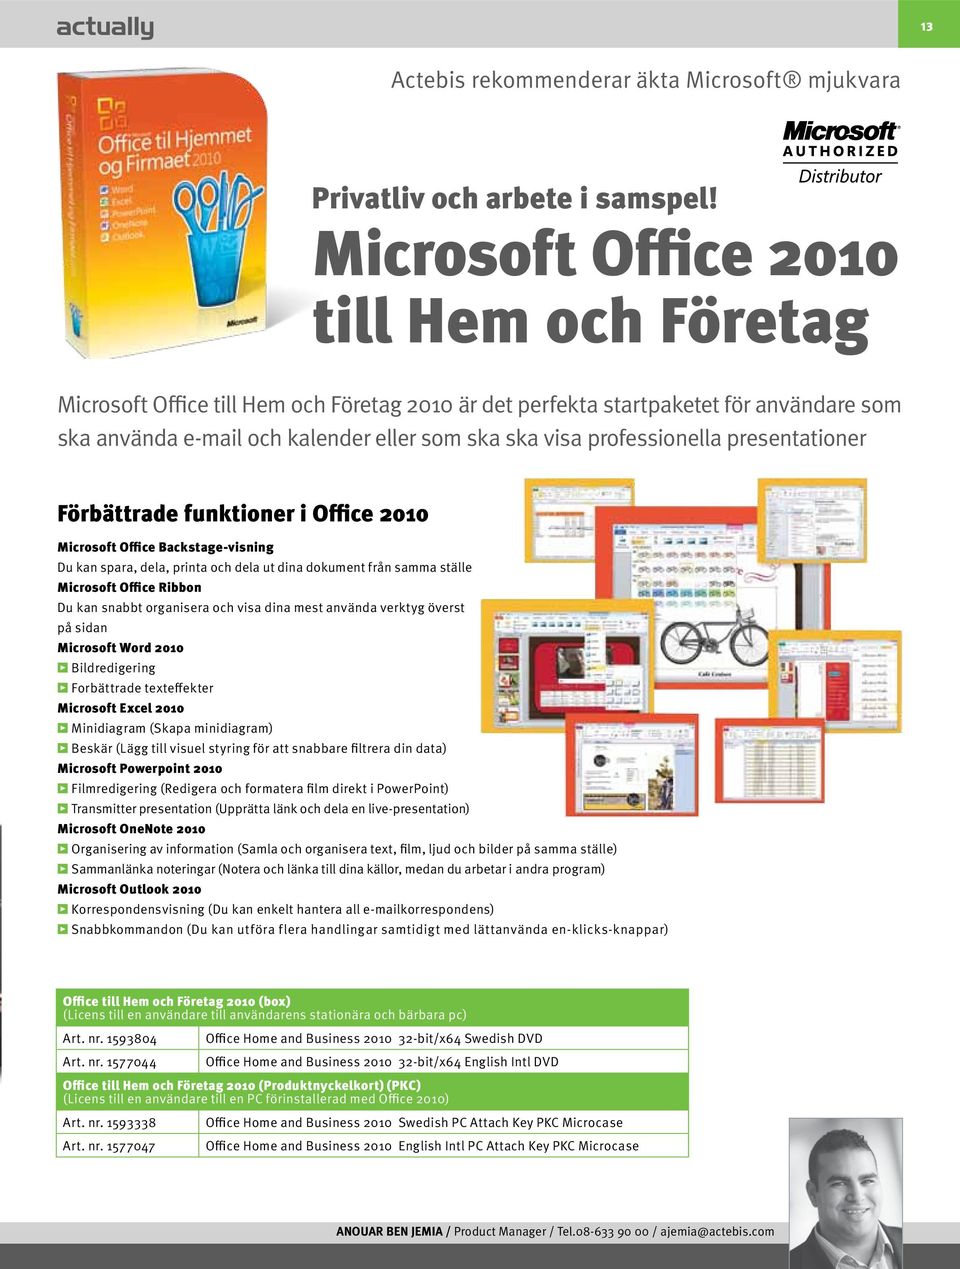 professionella presentationer Förbättrade funktioner i Office 2010 Microsoft Office Backstage-visning Du kan spara, dela, printa och dela ut dina dokument från samma ställe Microsoft Office Ribbon Du